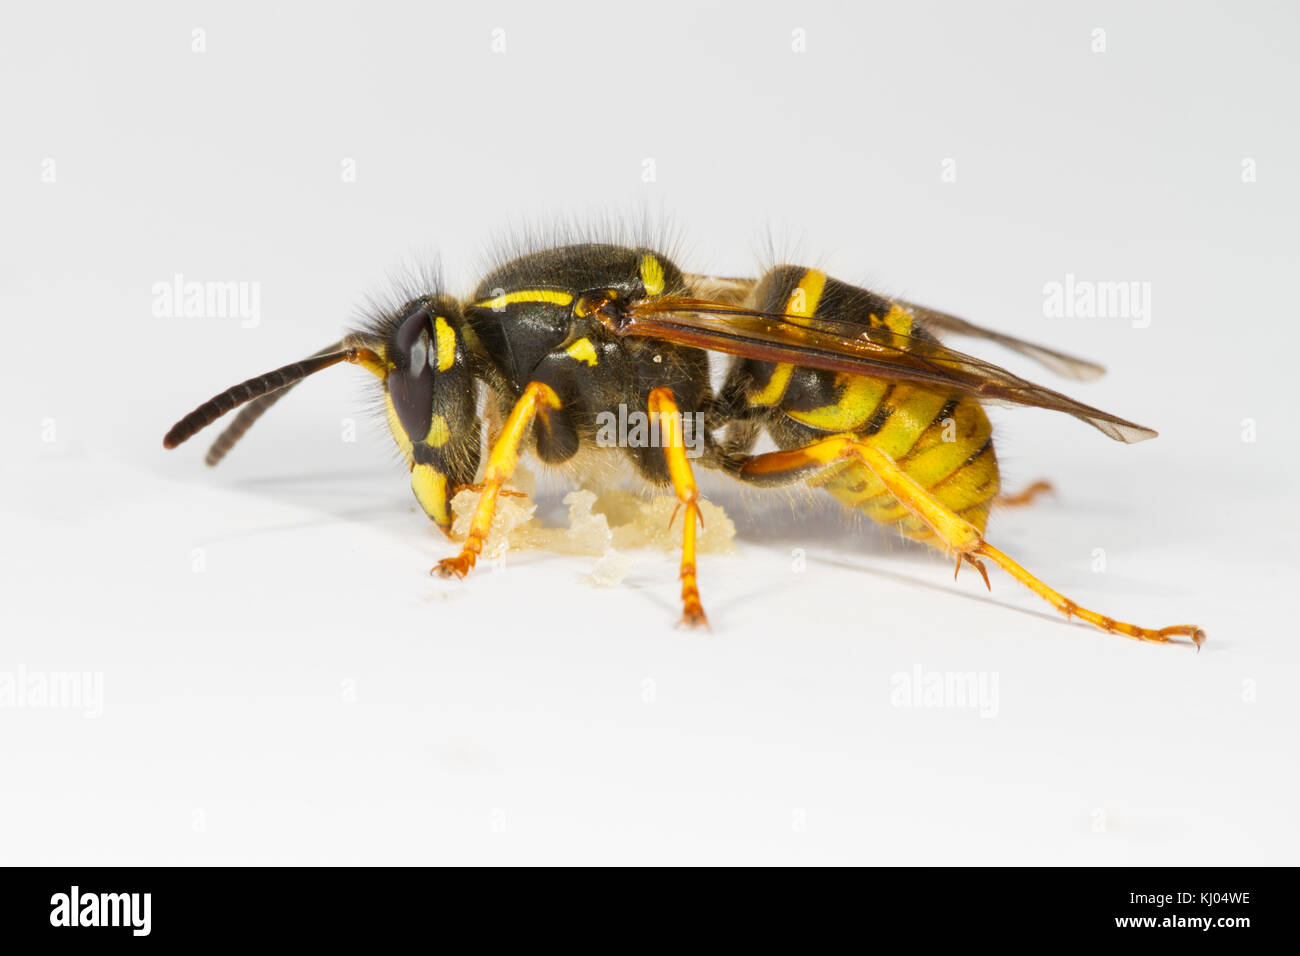 Wasp sassone (Dolichovespula saxonica) adulto lavoratore avanzamento sul miele su uno sfondo bianco. Powys, Galles. Agosto. Foto Stock